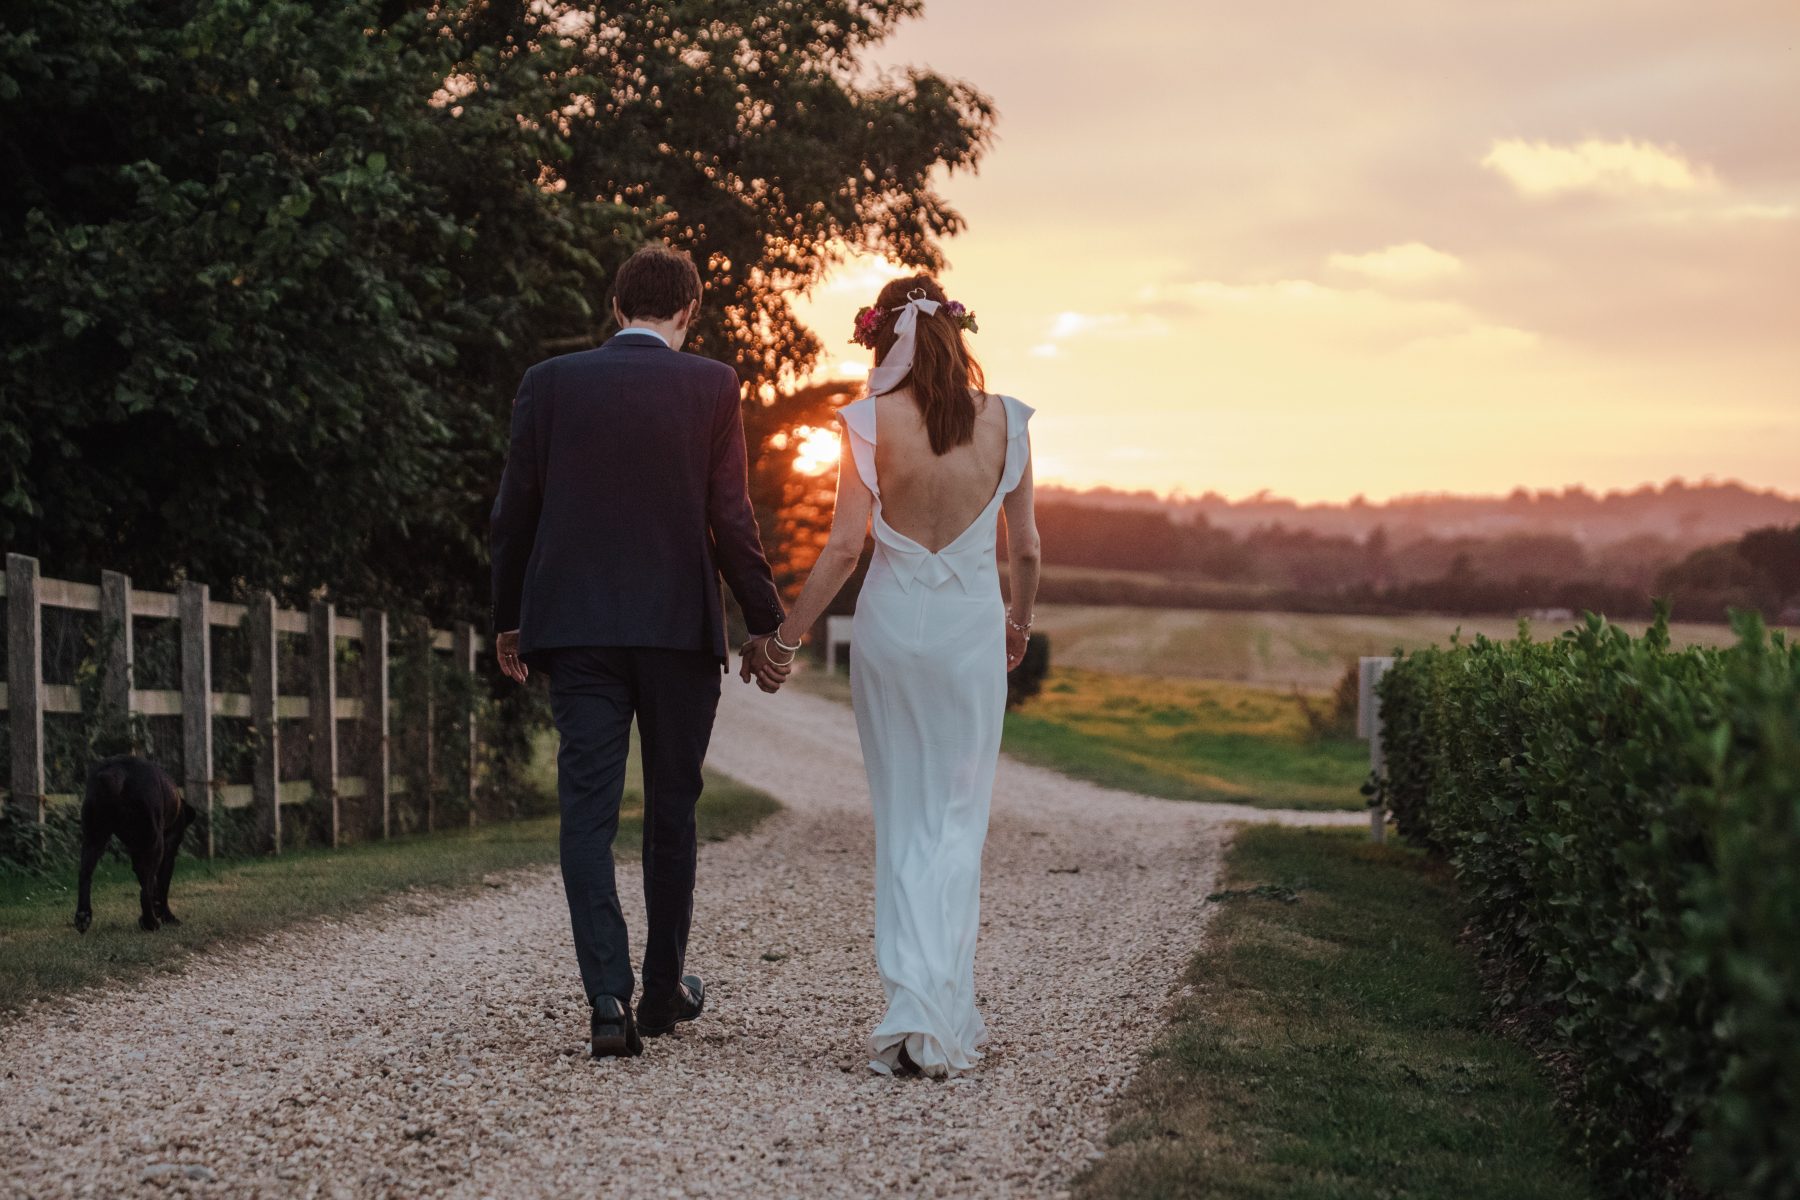 East Afton Farmhouse Wedding Venue Isle of Wight Couples Shots AI 18